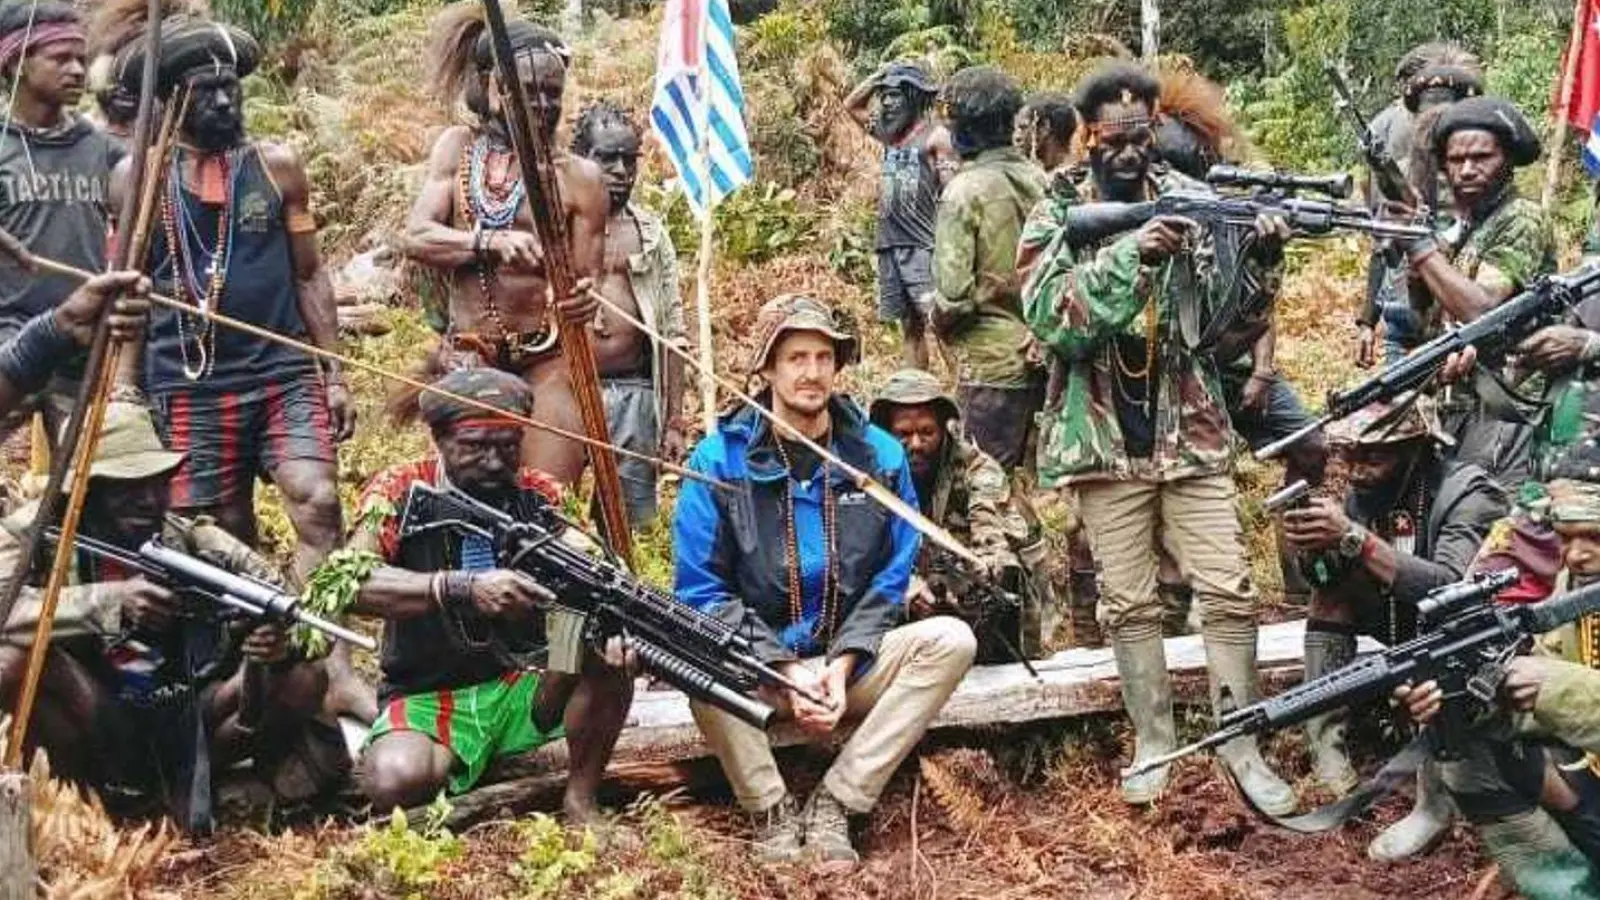 Philip Mehrtens wird in Papua von bewaffneten Rebellen festgehalten (Archivbild). (Foto: Uncredited/West Papua National Liberation Army/dpa)